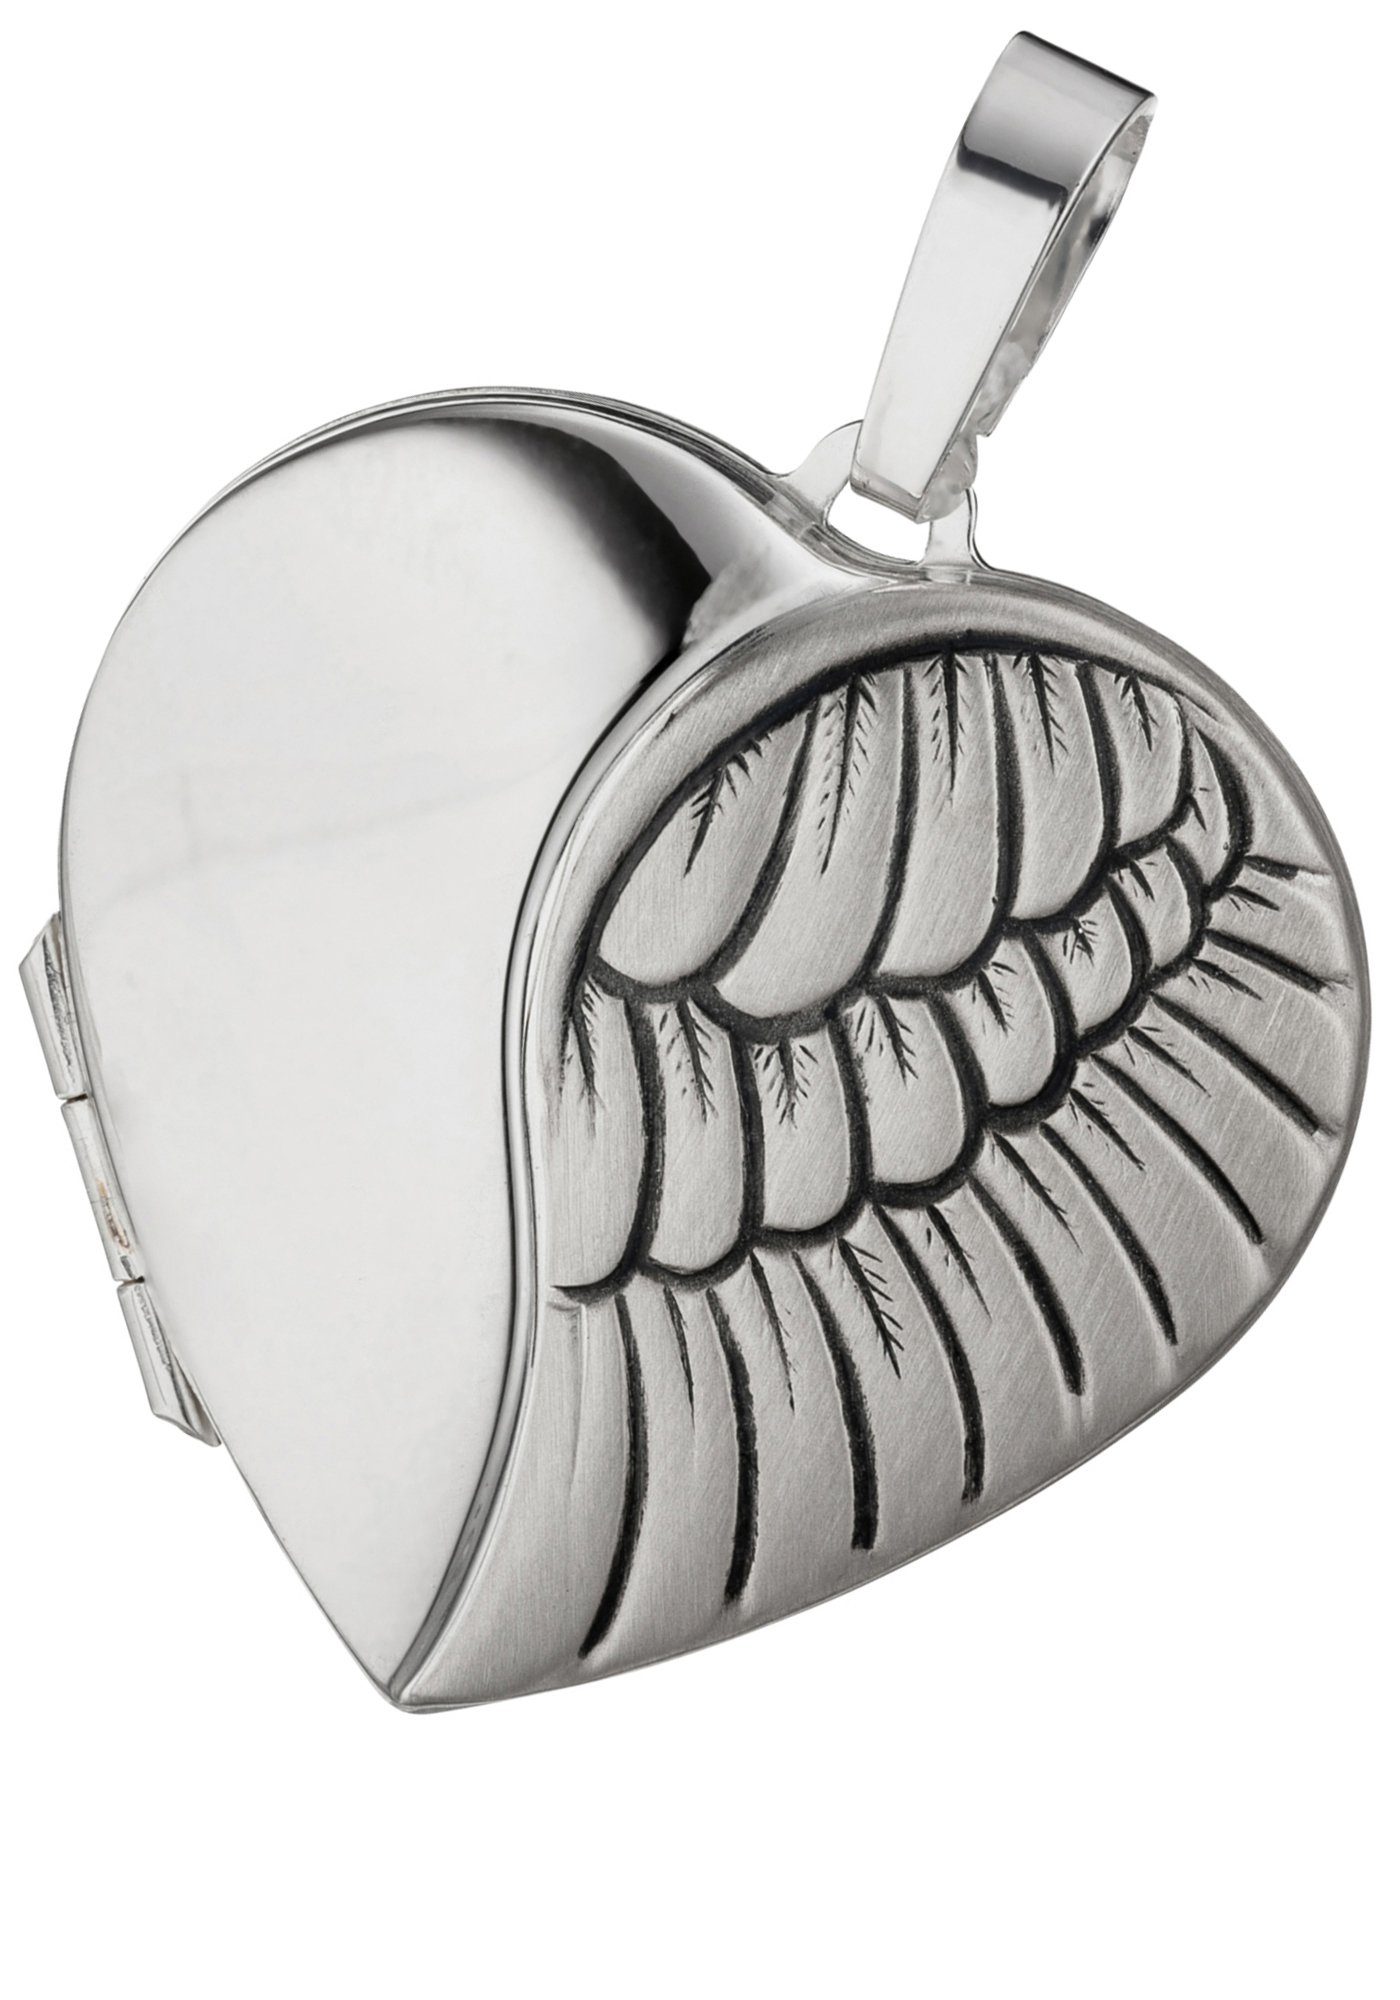 JOBO Medallionanhänger Anhänger Medaillon Herz, 925 Silber rhodiniert, Höhe  ca. 29,7 mm, Breite ca. 28,8 mm, Tiefe ca. 7,3 mm